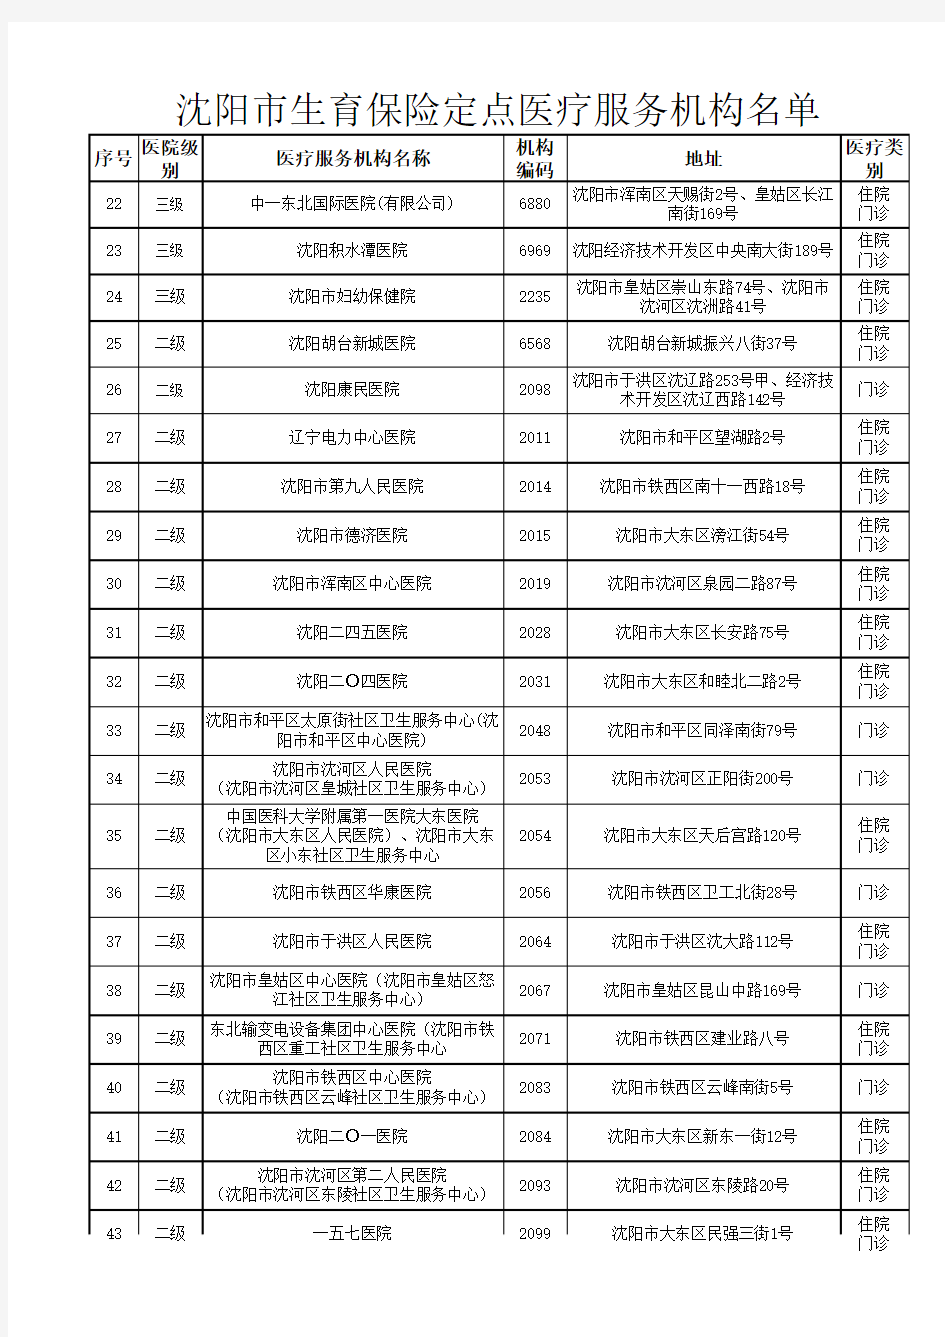 3-8沈阳市生育保险定点医疗服务机构名单